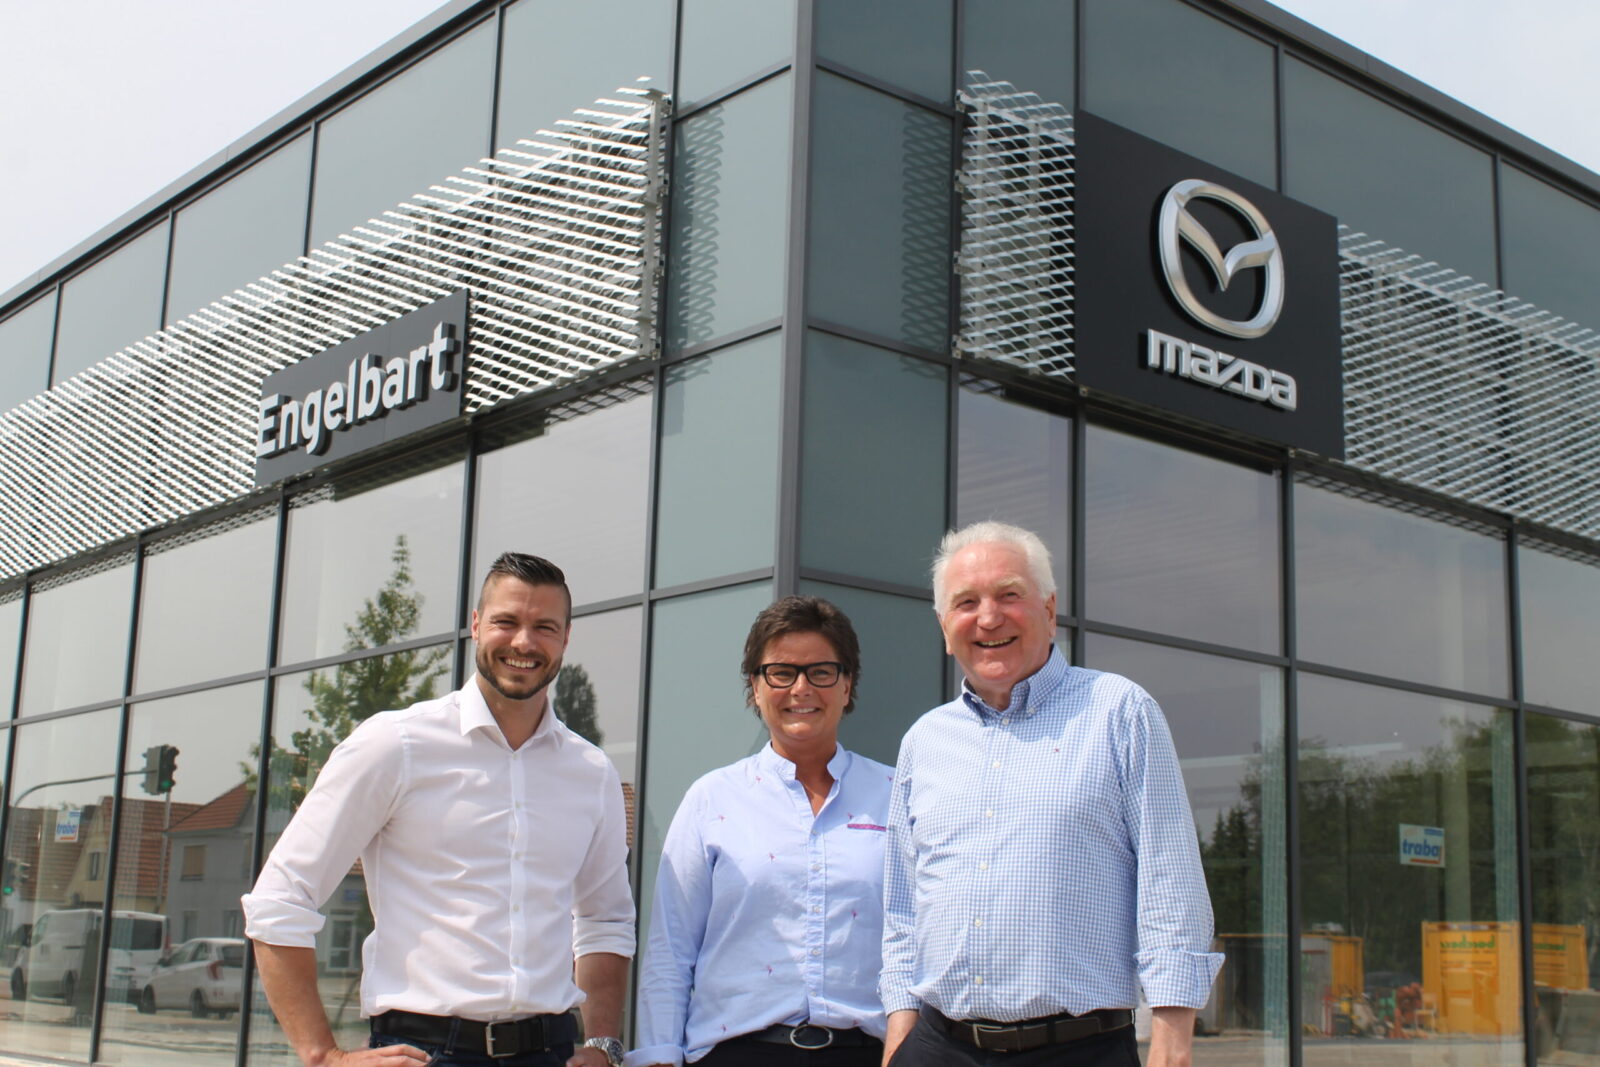 Neues Engelbart Autohaus 246 ffnet im Juni Mazda als neue Marke